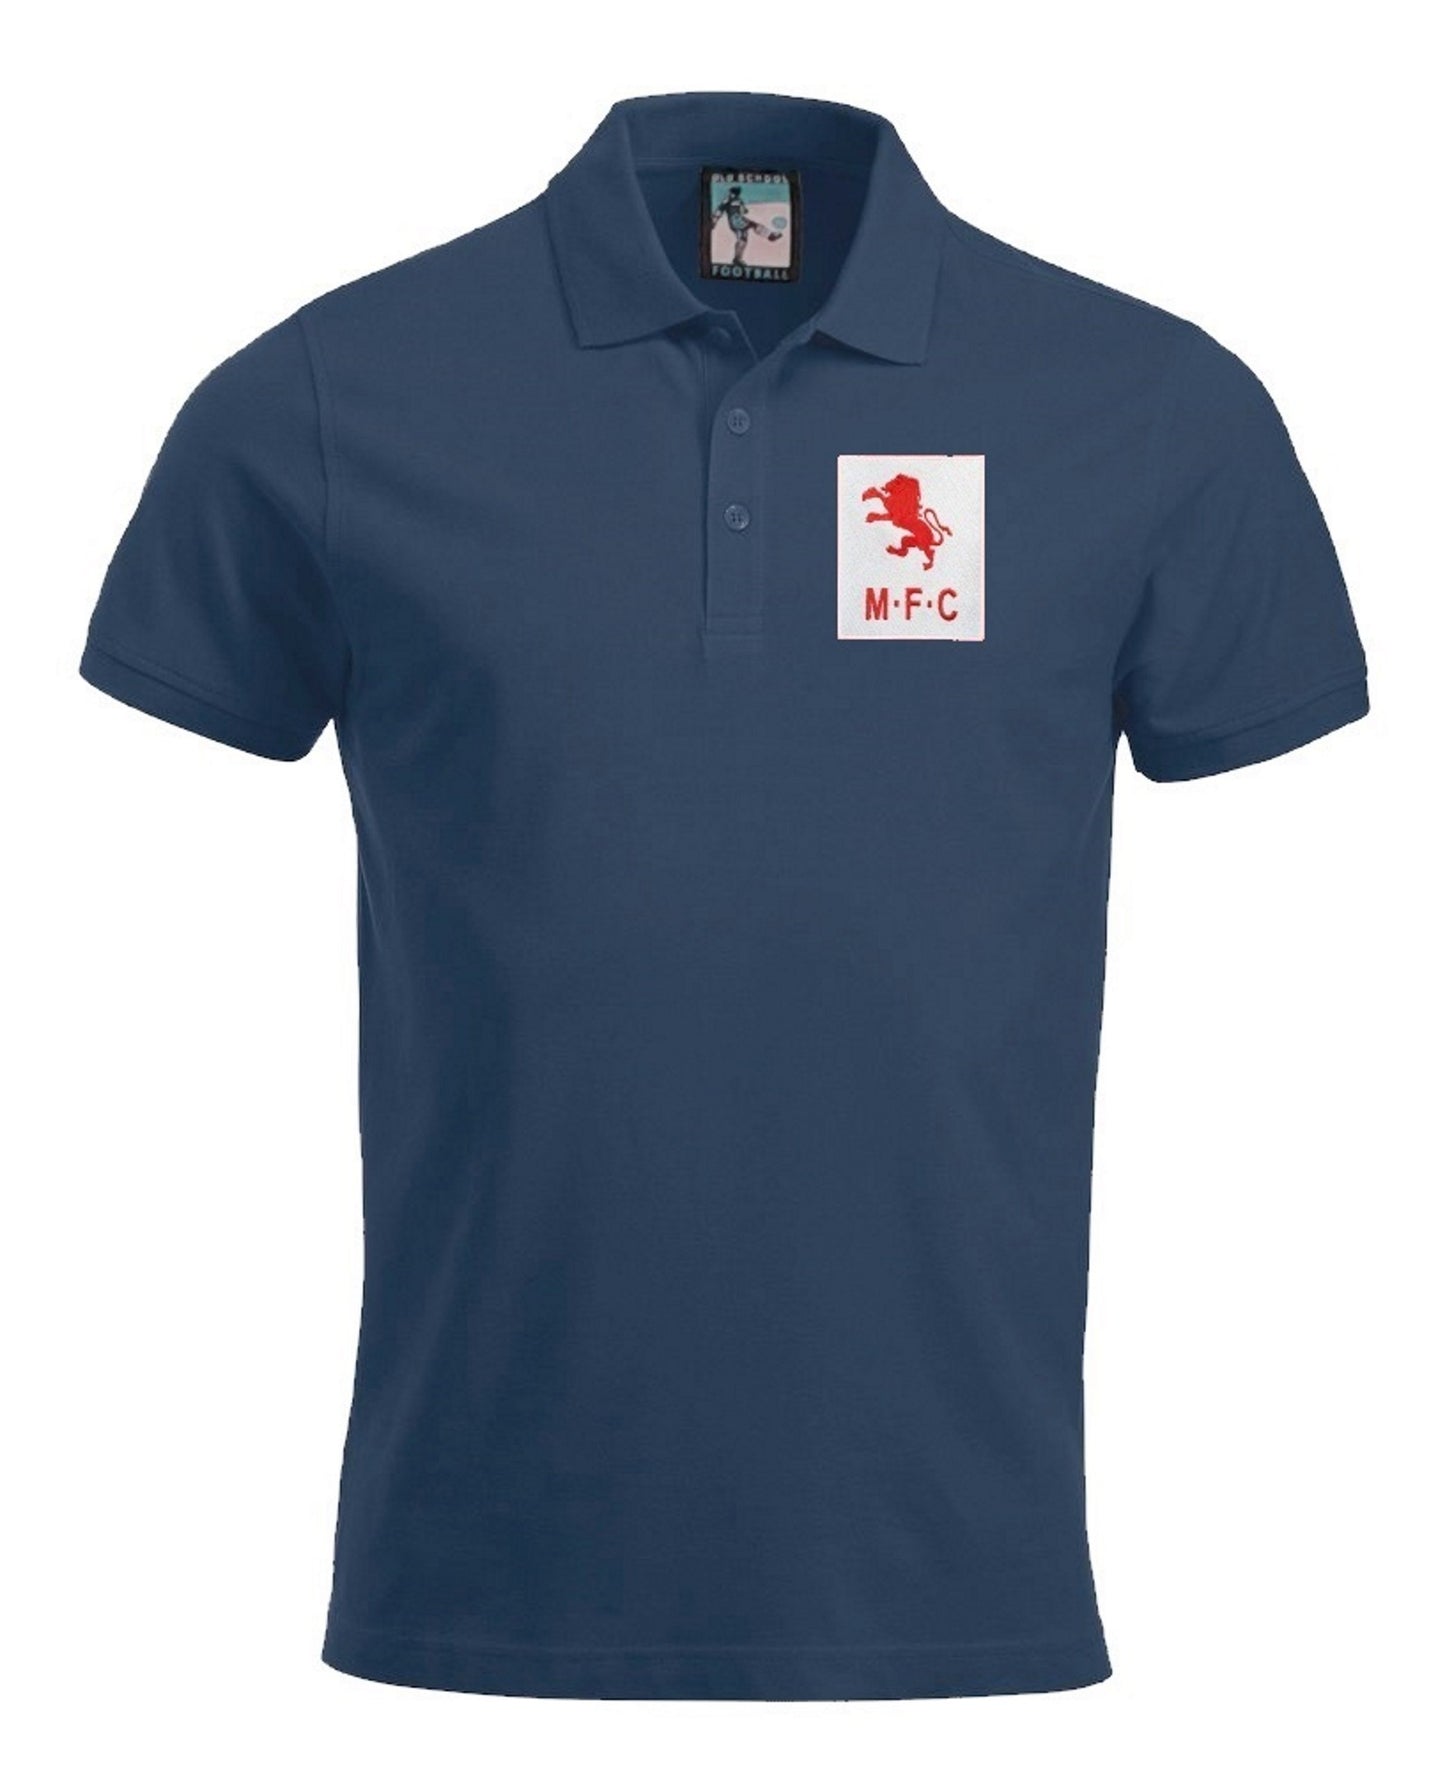 Middlesbrough Retro 1950s Football Polo Shirt - Polo